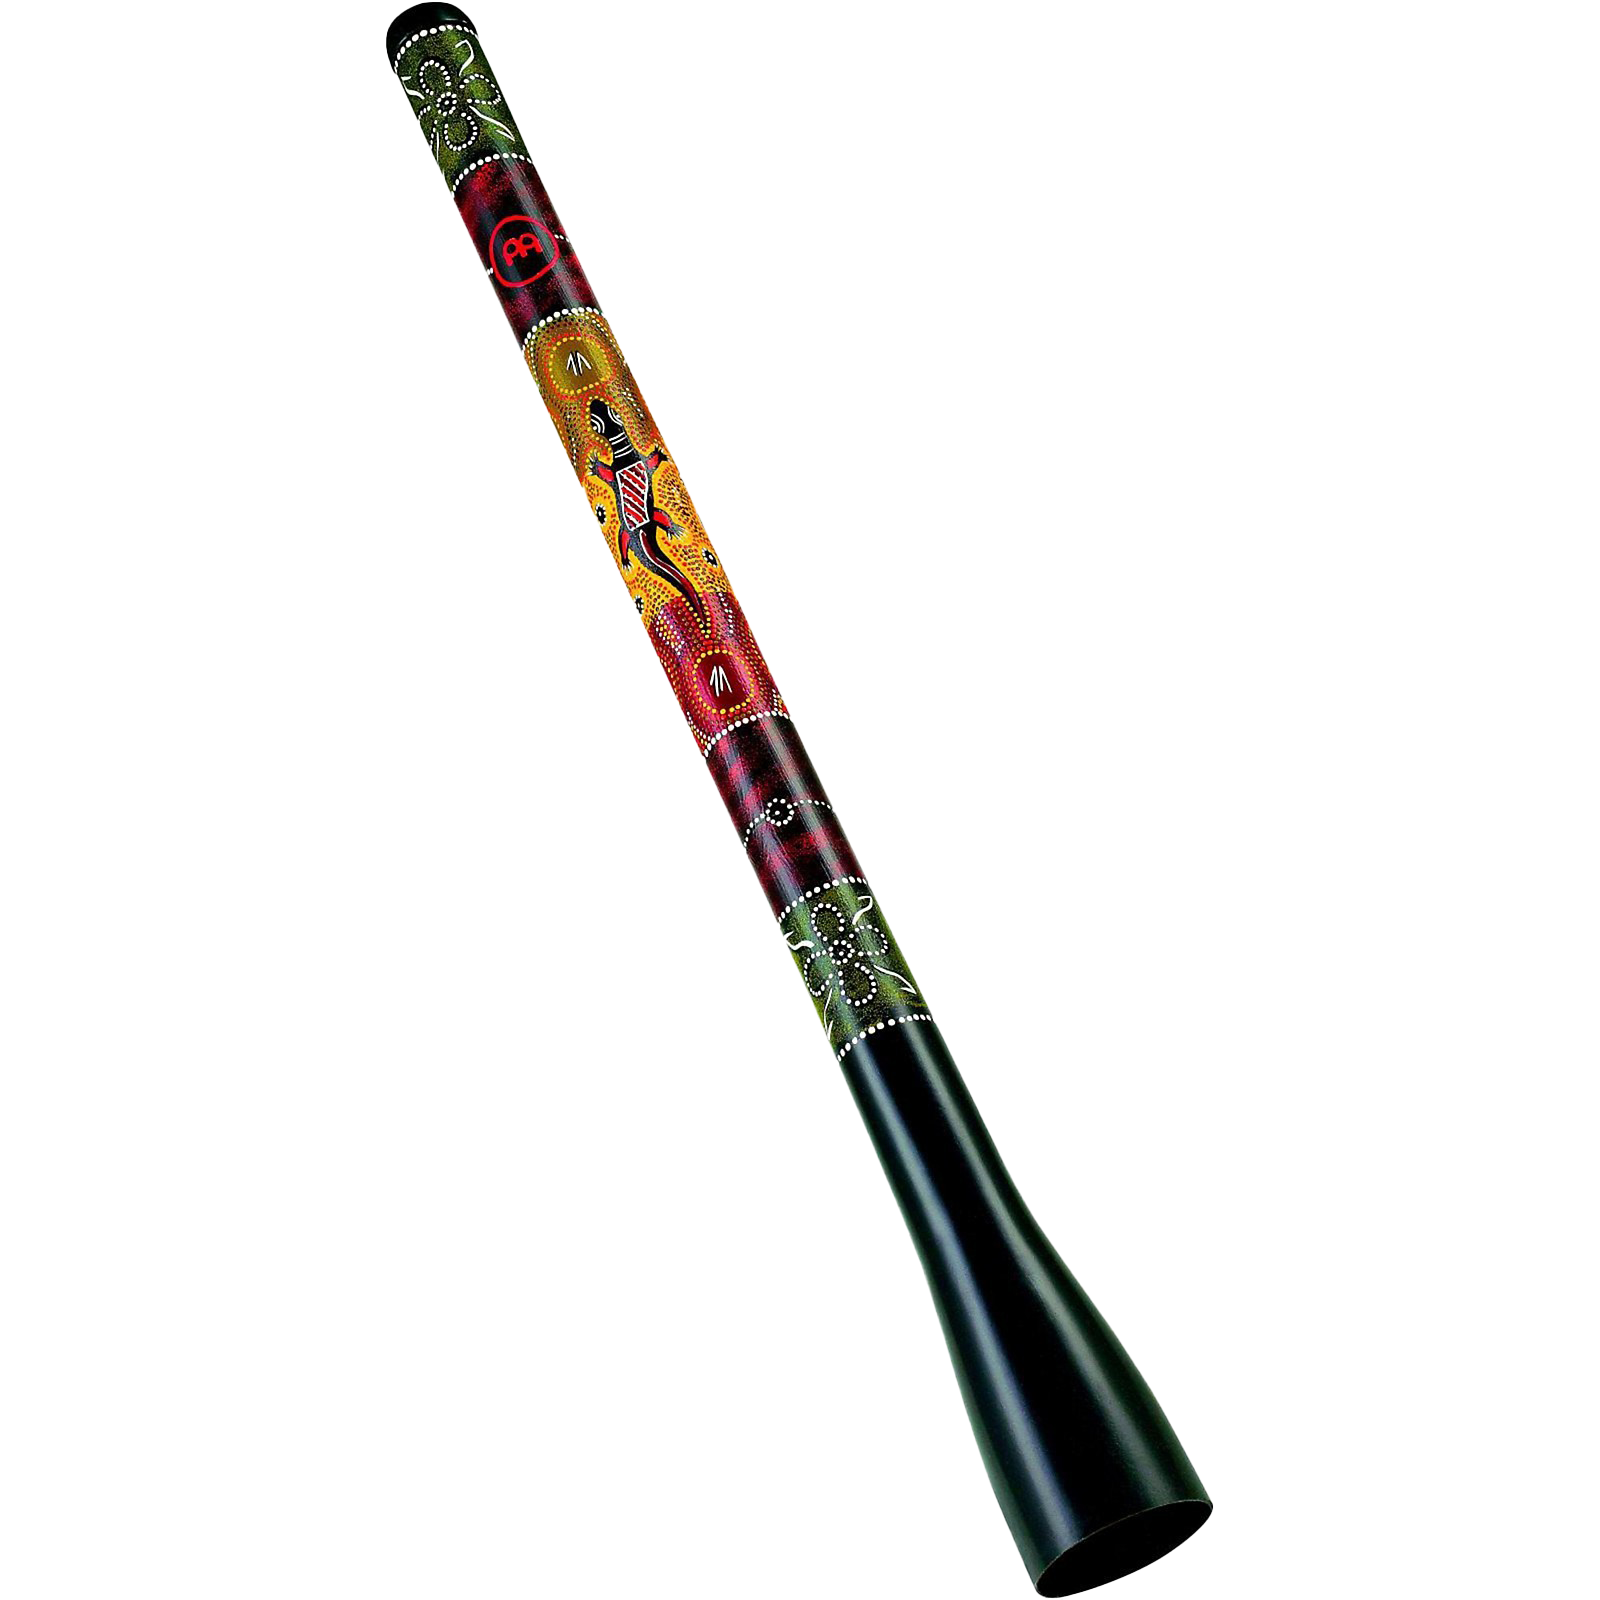 Didgeridoo Wind Instrument PNG Free Download